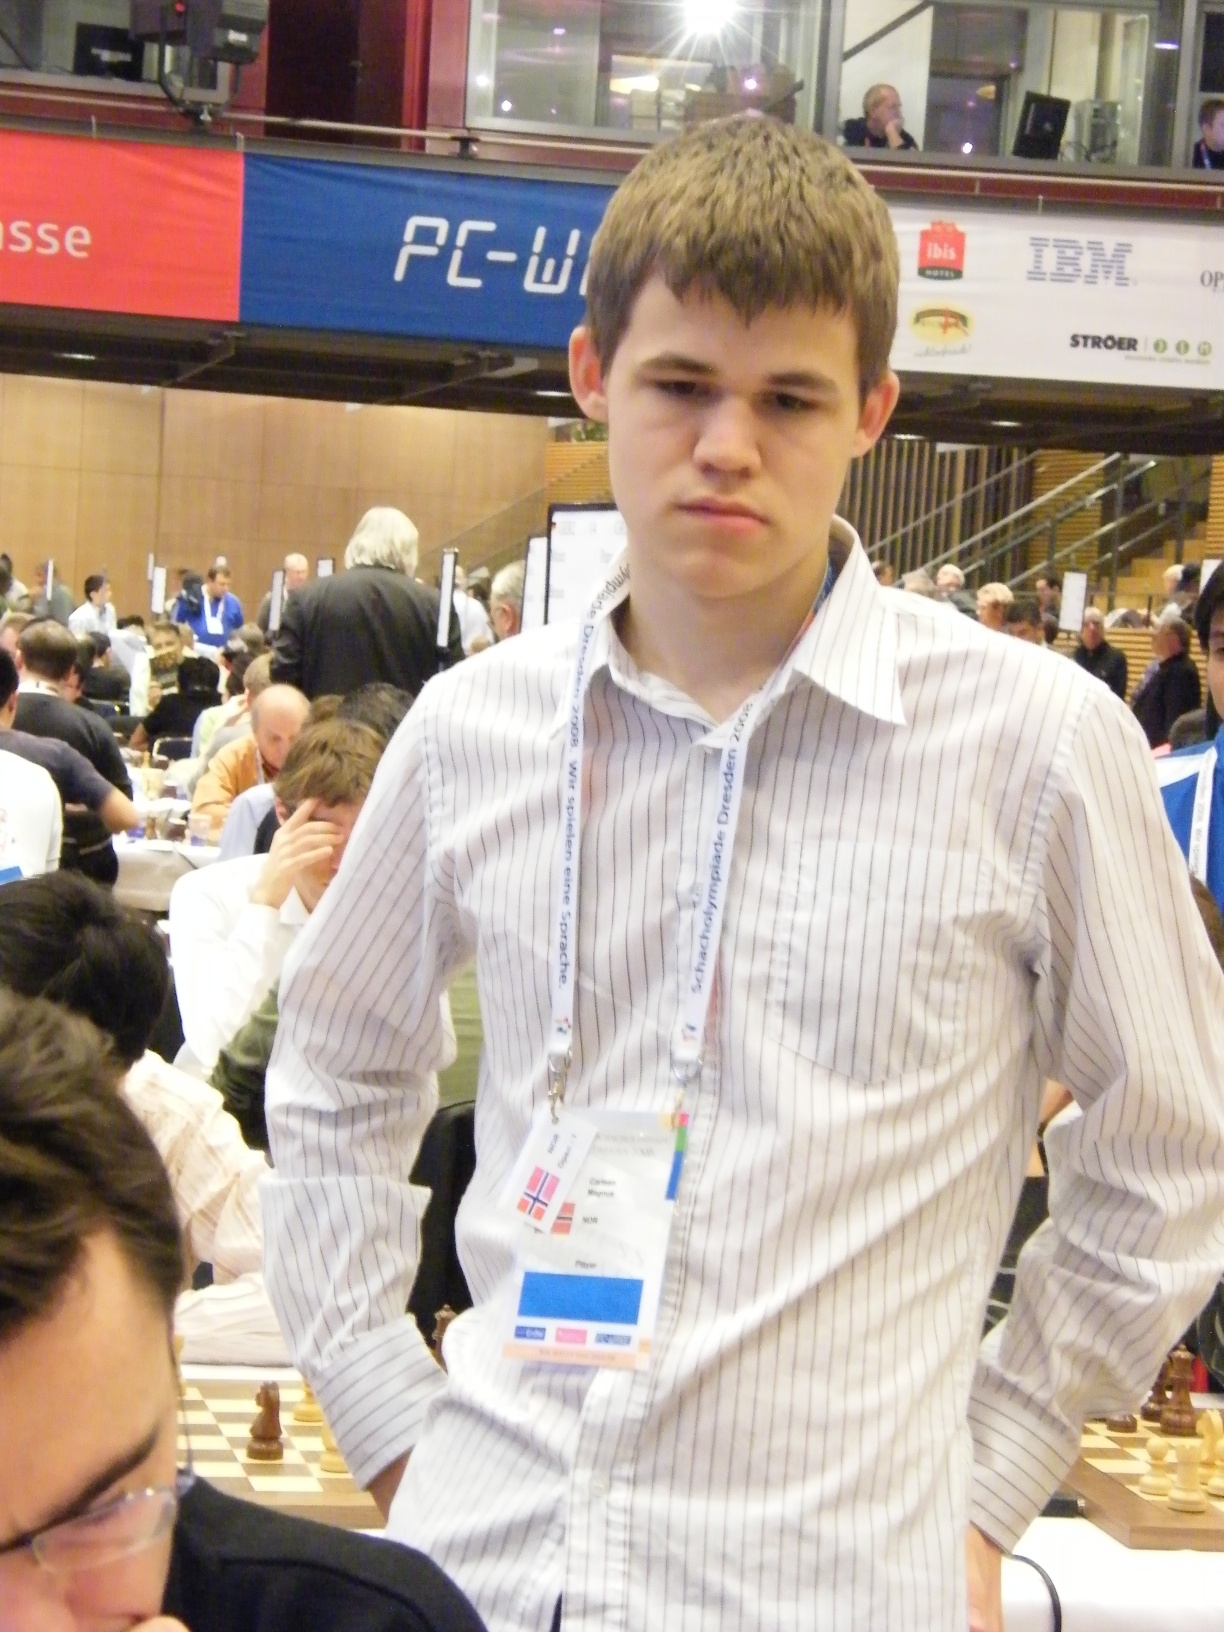 Auf dem Bild ist Magnus Carlsen zu sehen